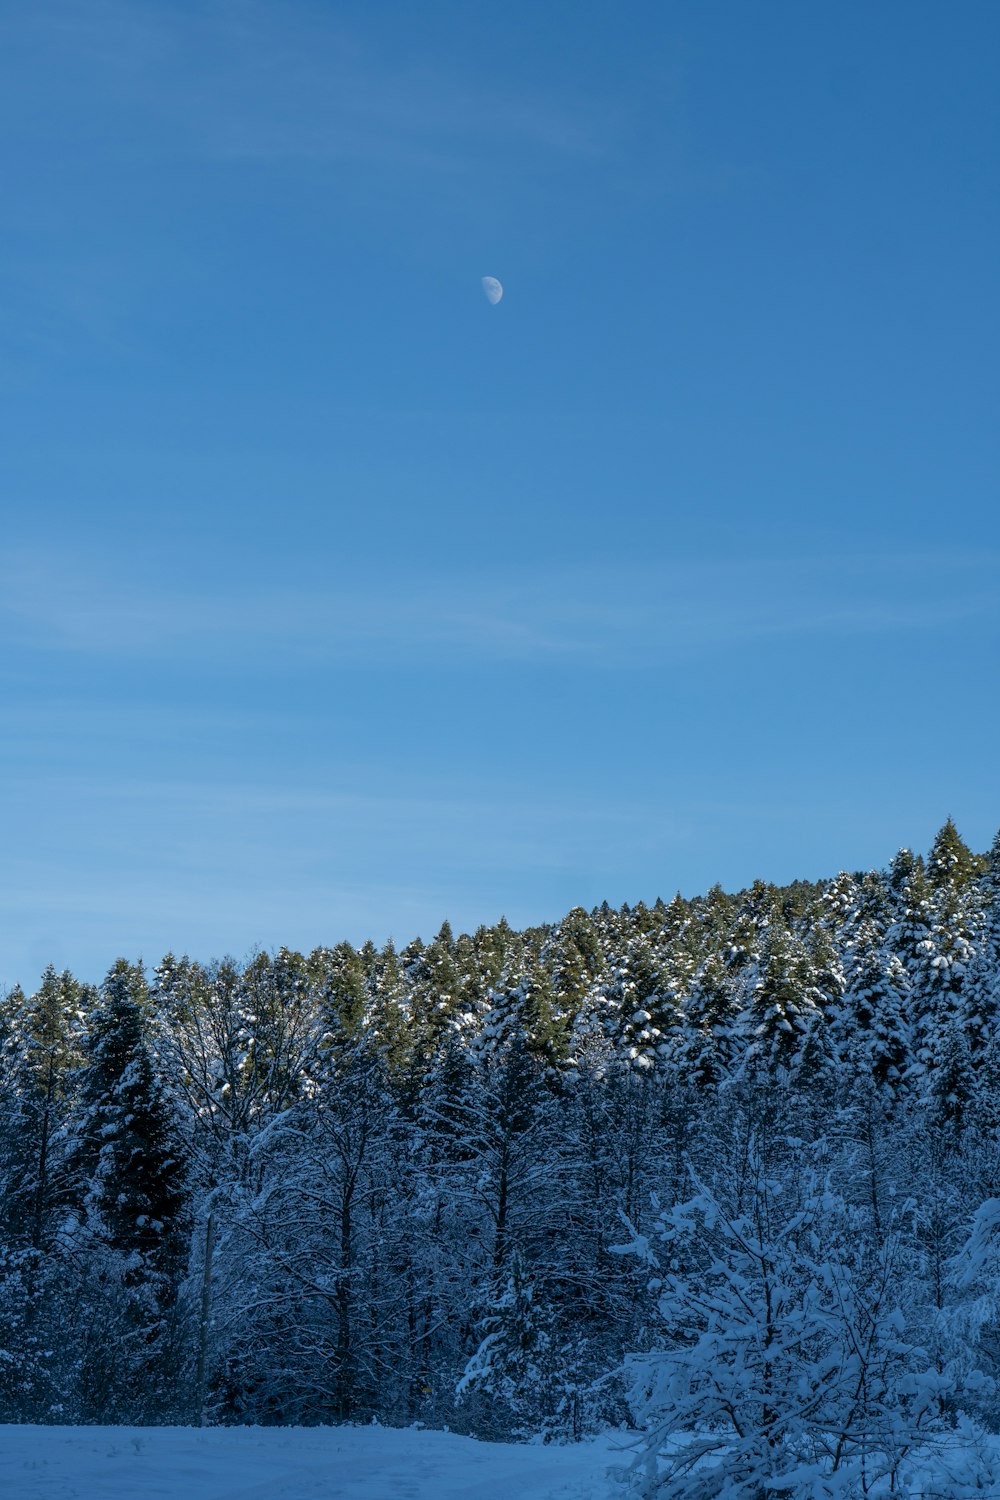 Un champ enneigé avec des arbres et une lune dans le ciel